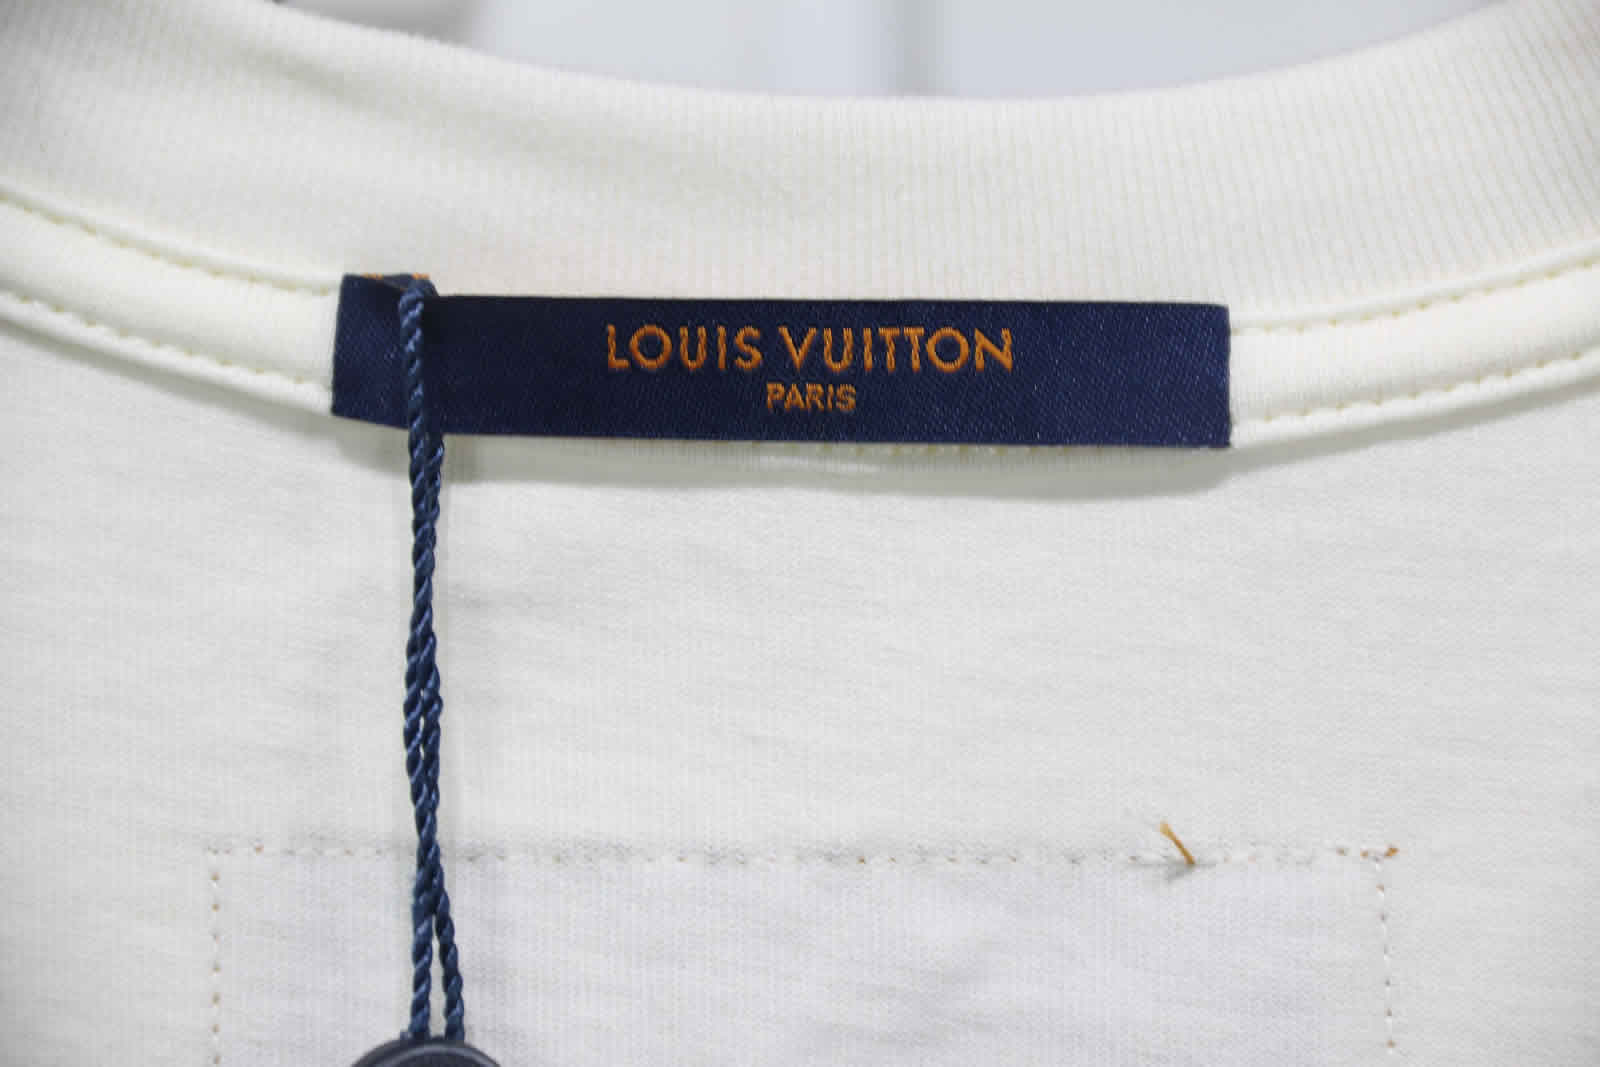 Louis Vuitton Catwalk T Shirt 2021 26 - kickbulk.org